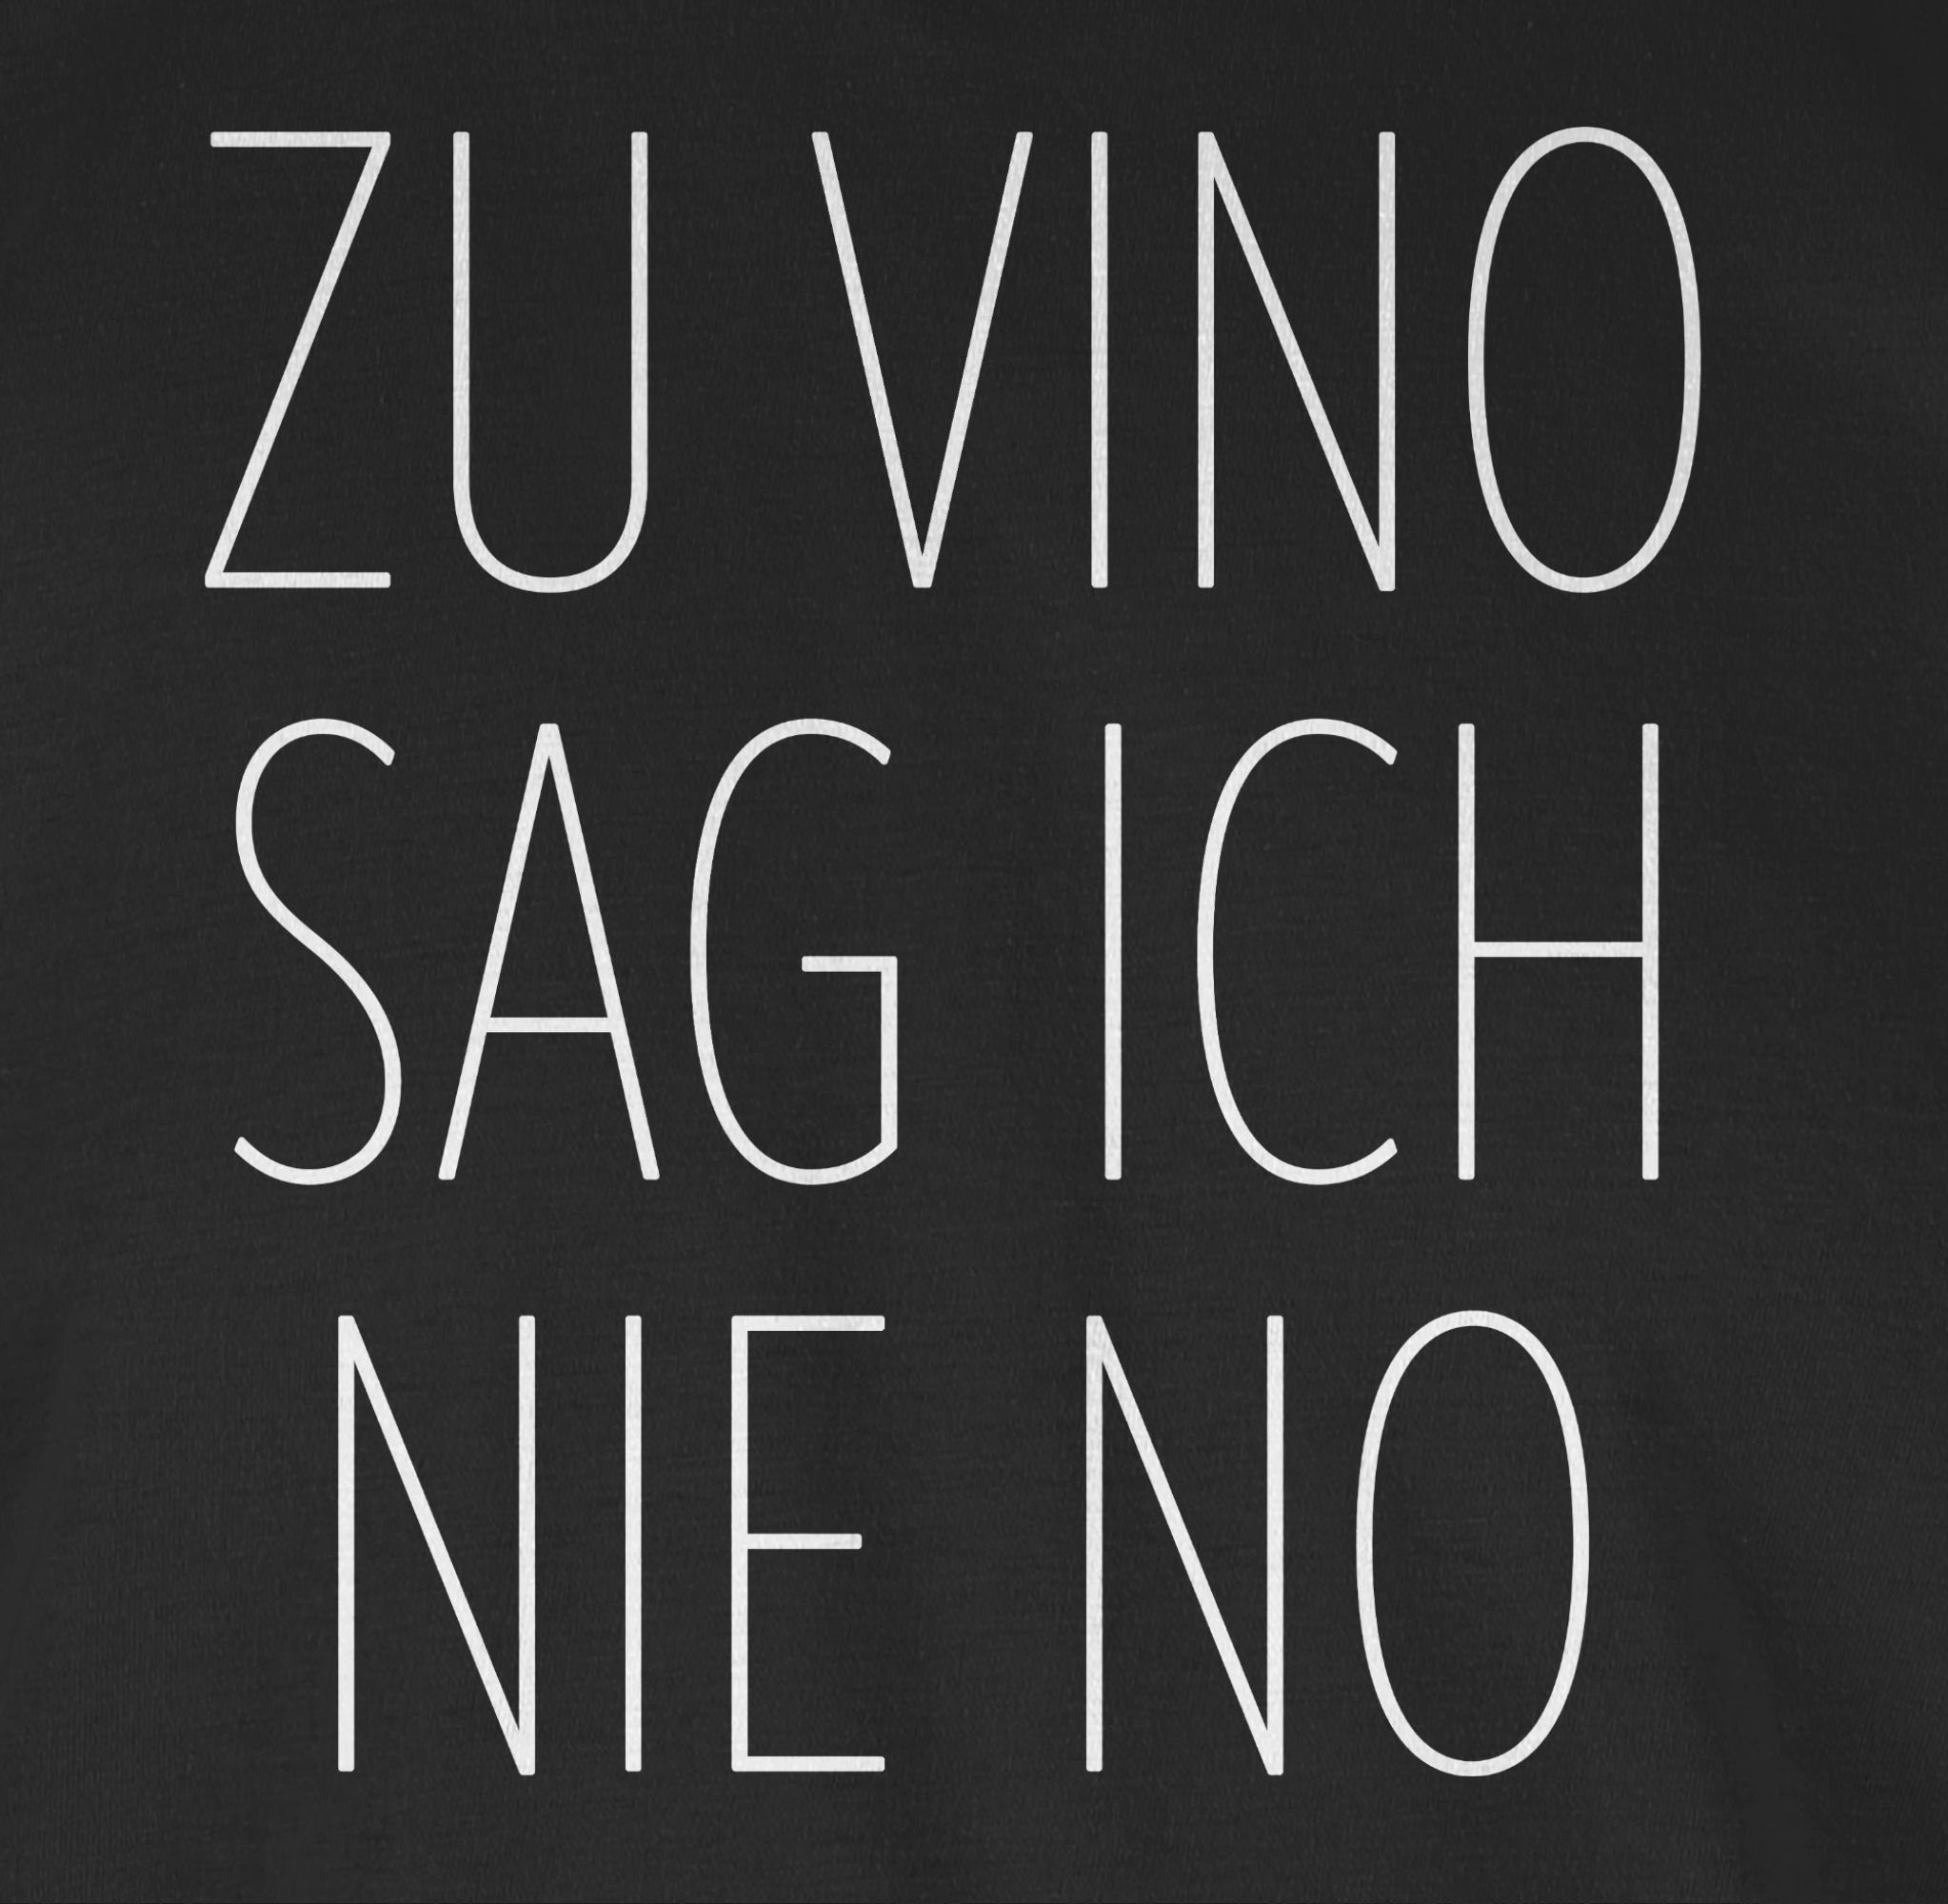 Vino Shirtracer 01 nie weiß ich Spruch Schwarz T-Shirt Sprüche No Zu mit sag Statement